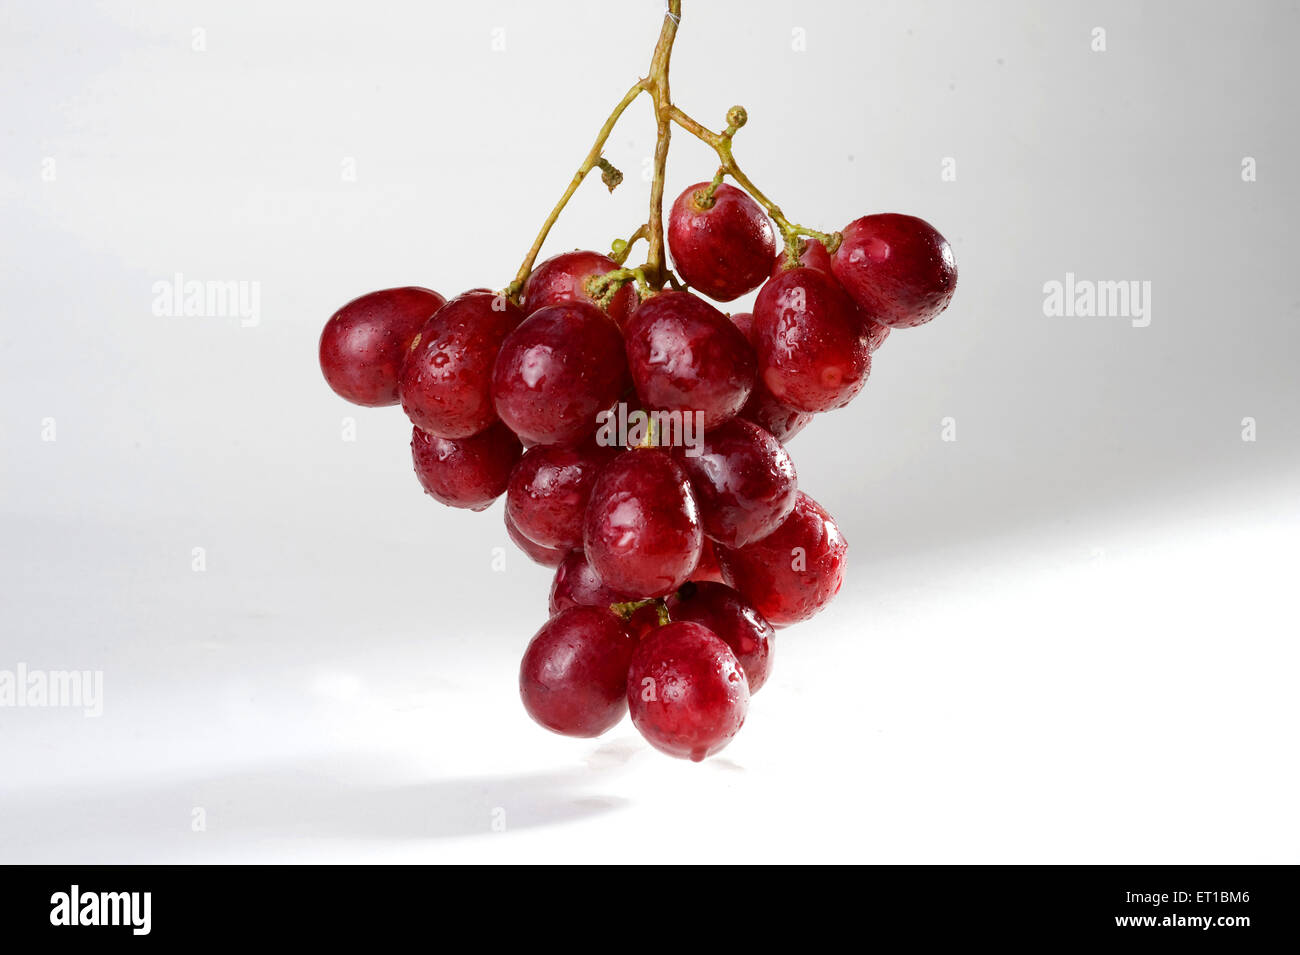 Fruits ; goutte d'eau sur une bande de raisins rouges sur fond blanc Banque D'Images